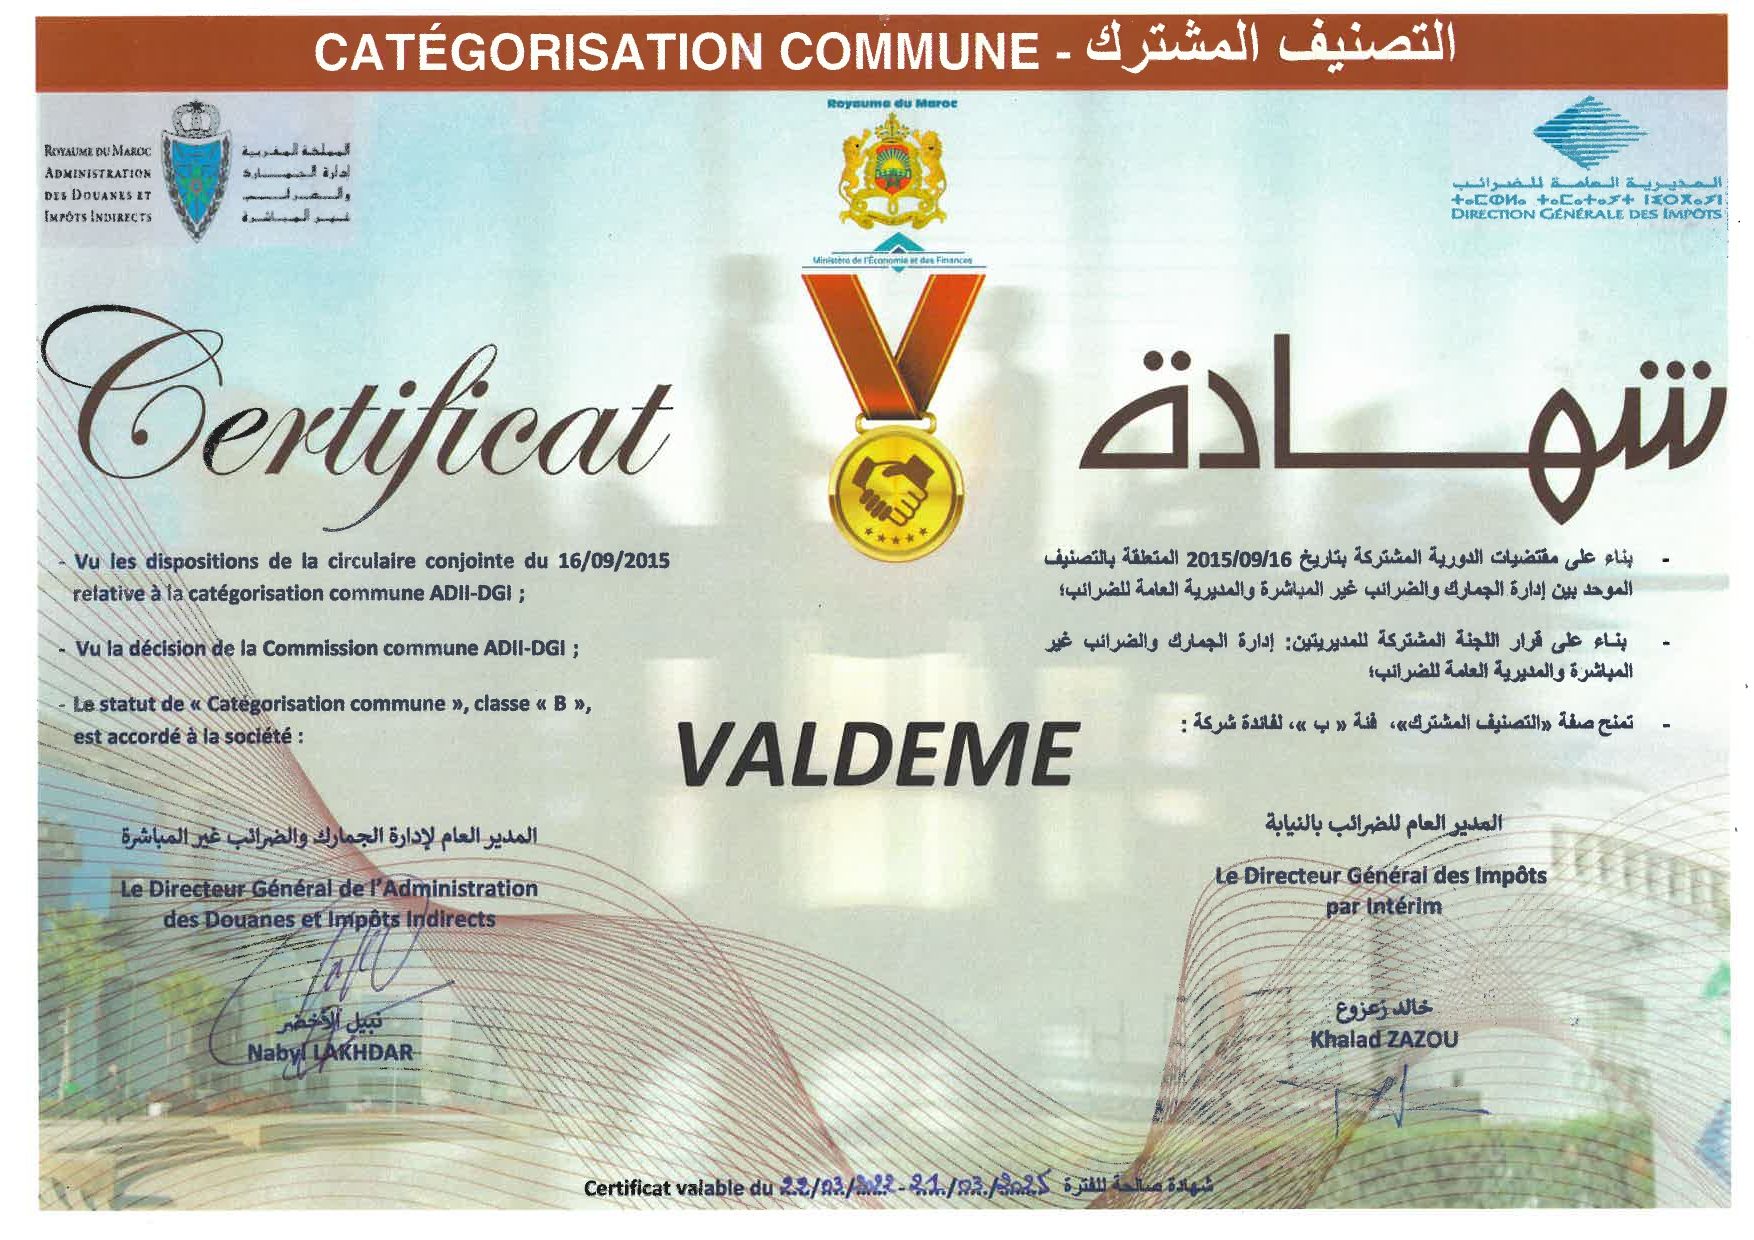 Valdeme catégorisation commune certificat